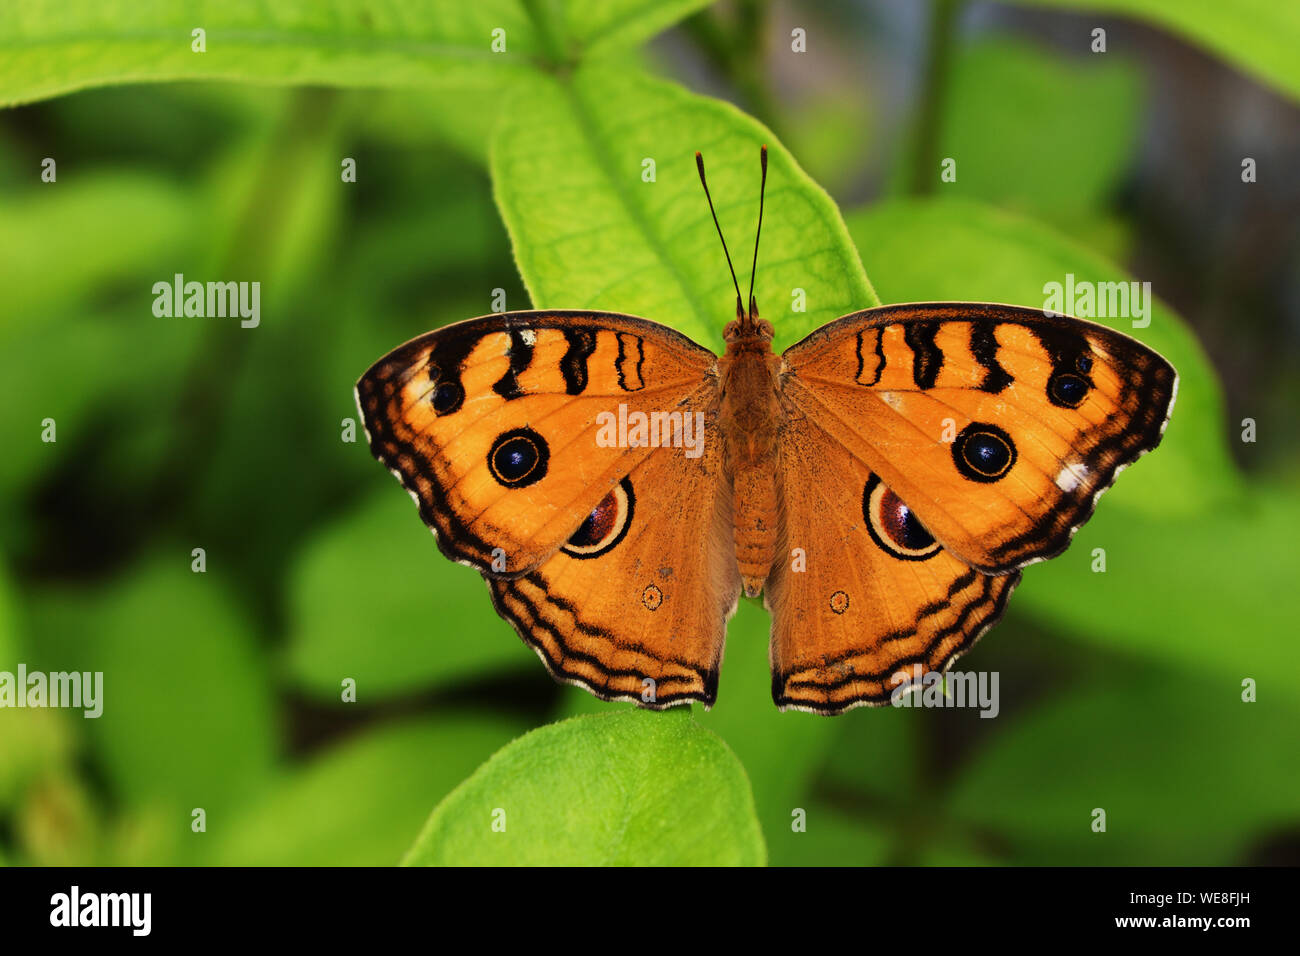 Der Pfau Pansy (Junonia almana) Schmetterling auf Blatt mit natürlichen, grünen Hintergrund, Muster ähnlich den Augen auf dem Flügel von orange Farbe insekt Stockfoto